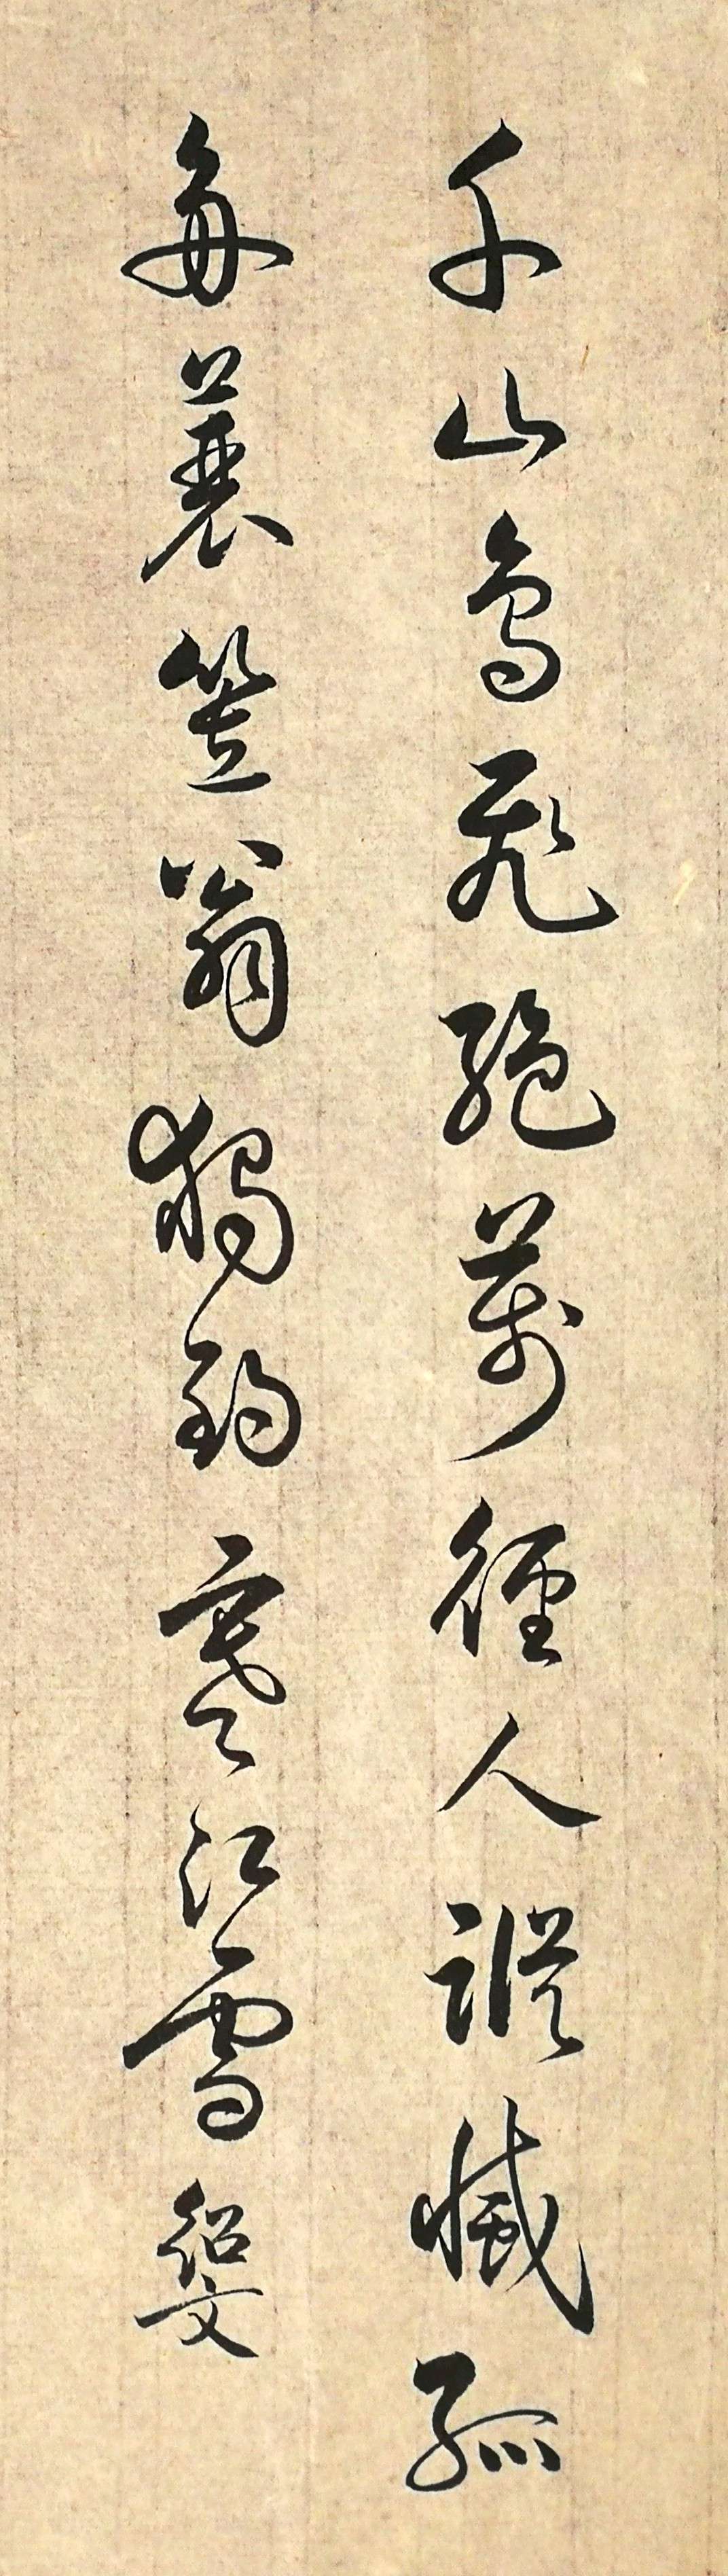 柳宗元的书法字体图片